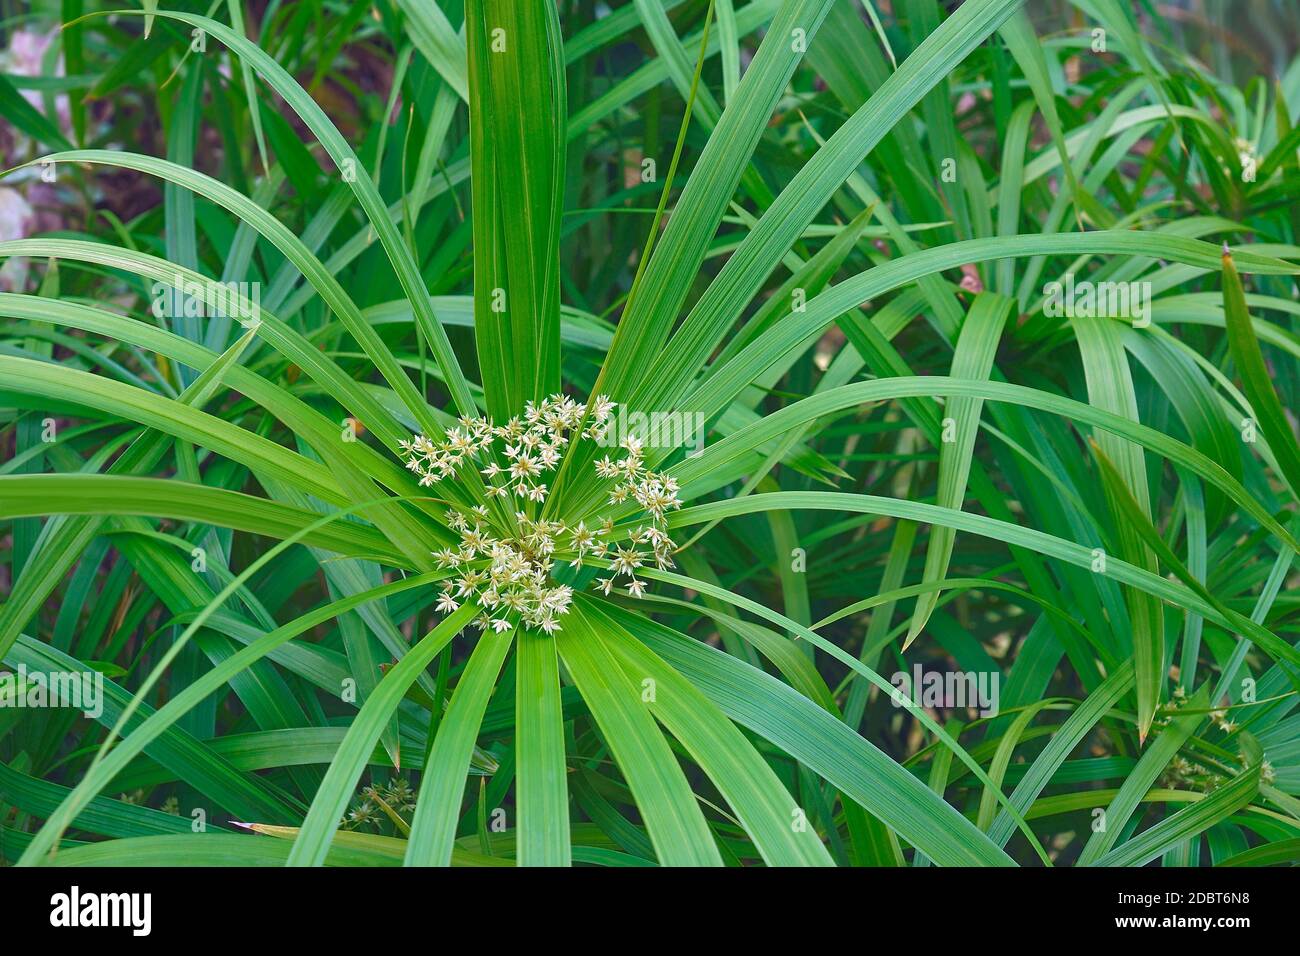 Umbrella plant (Cyperus alternifolius). Called Umbrella palm, Umbrella papyrus and Umbrella sedge also. Another scientific name is Cyperus involucratu Stock Photo